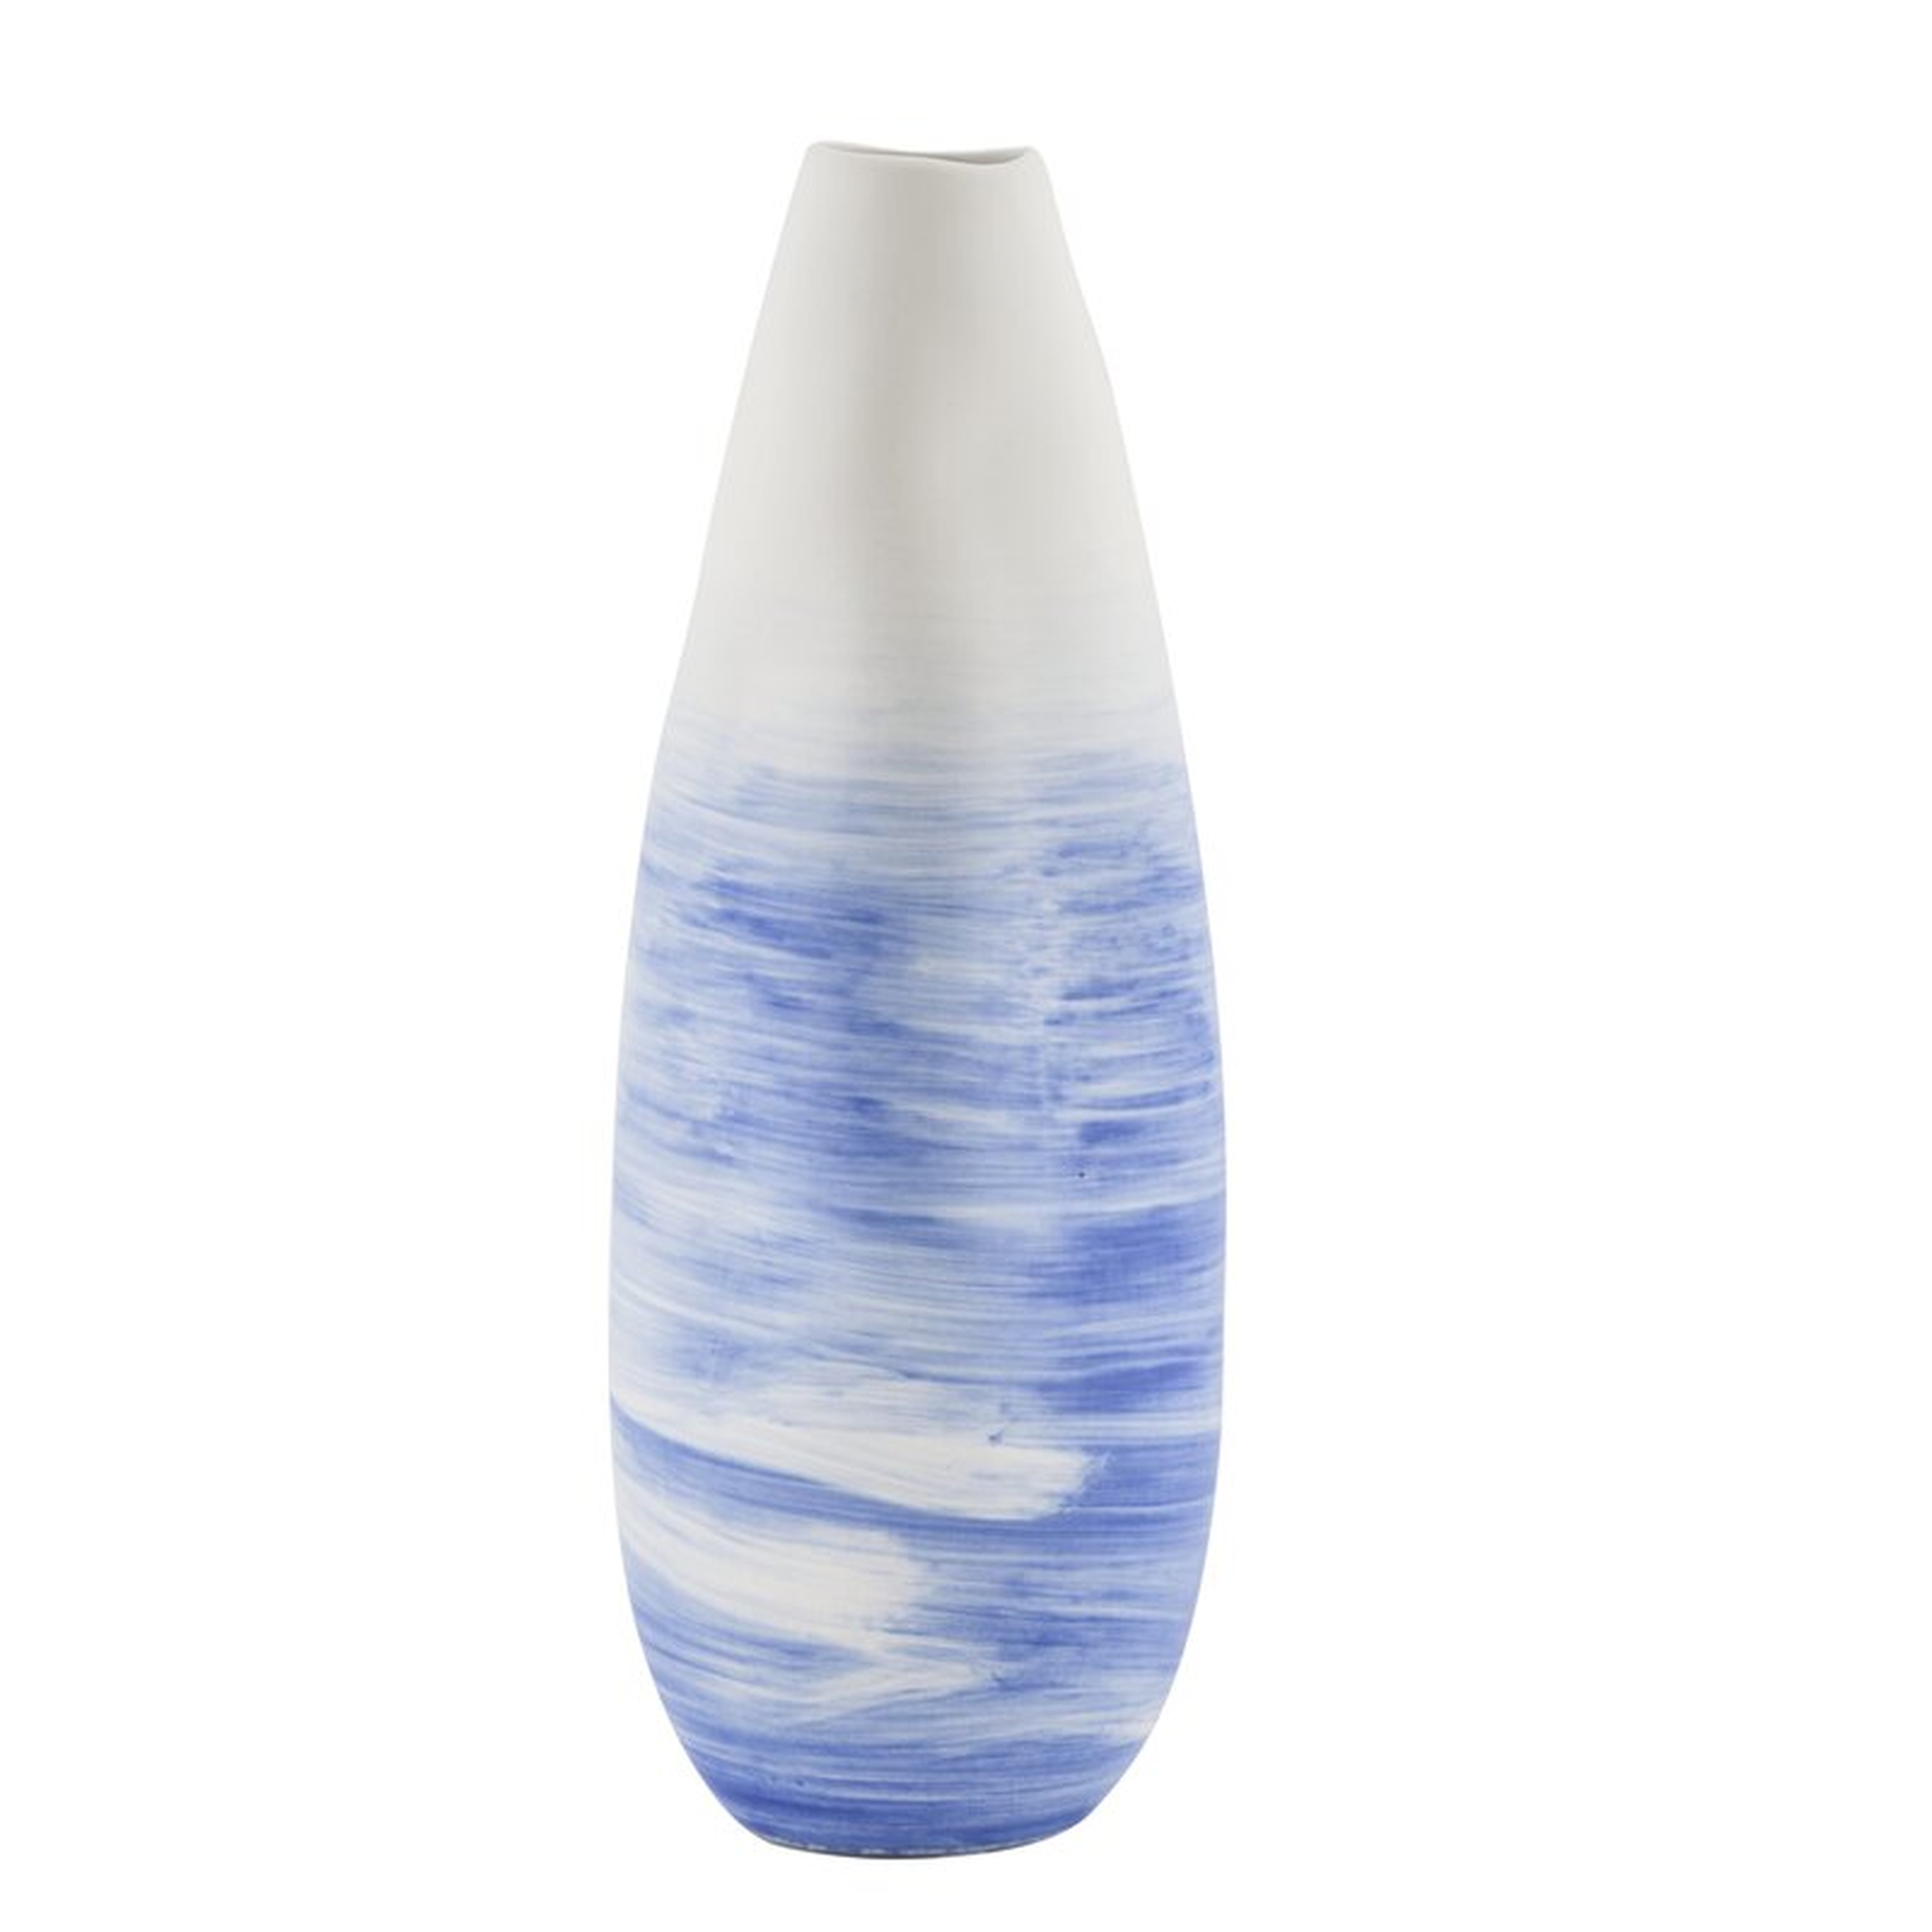 Legend of Asia Scott Table Vase Color: Blue, Size: 13.8" H x 3.1" W x 5.1" D - Perigold